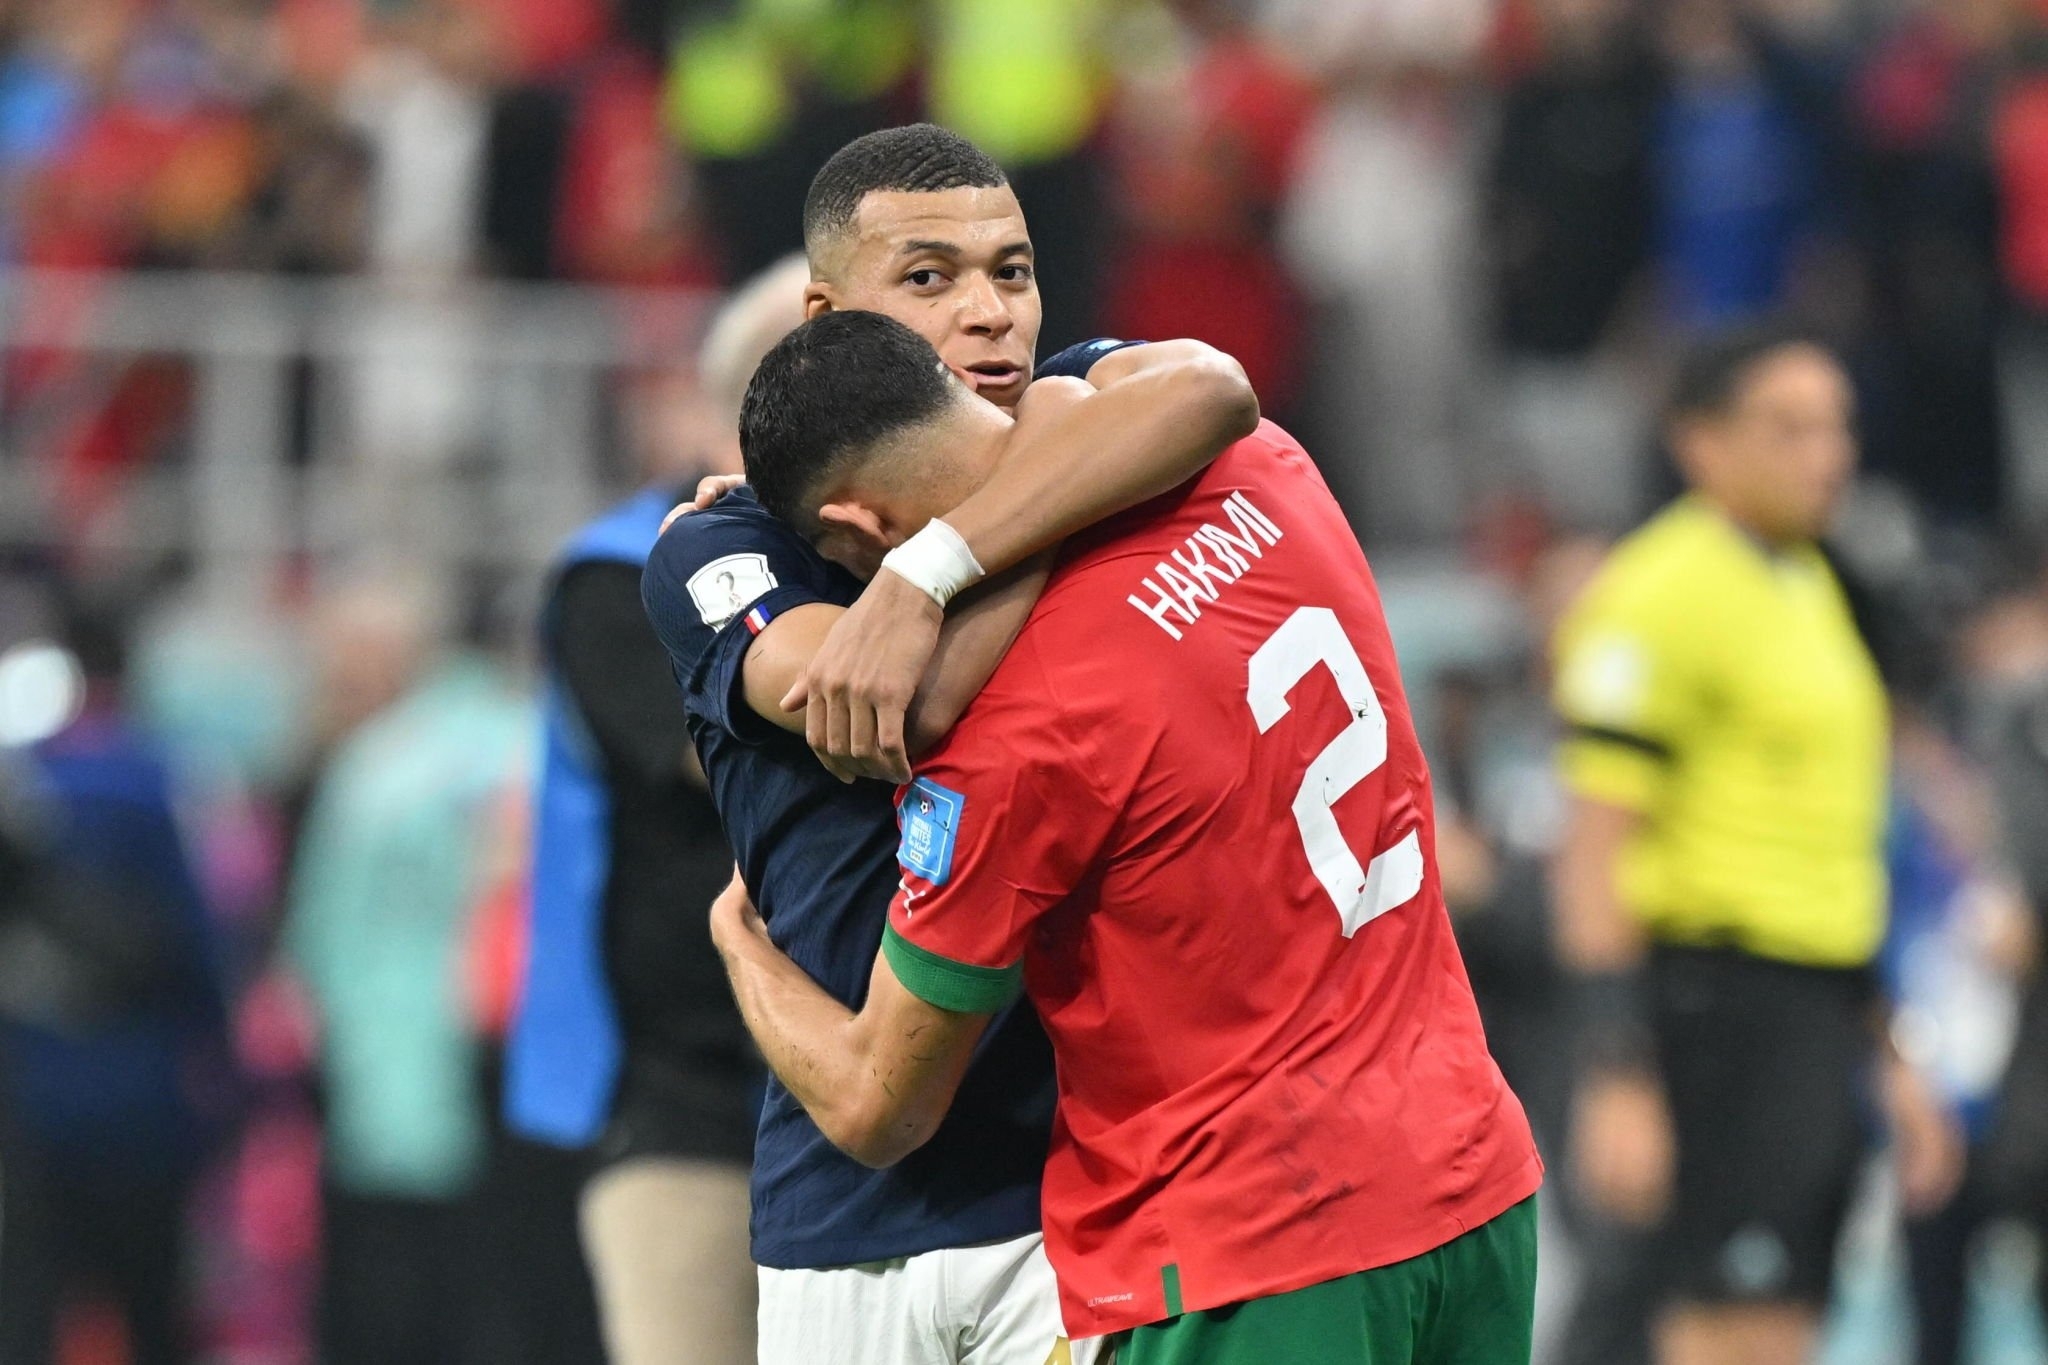 أشرف حكيمي وكيليان مبابي من مباراة المنتخب المغربي وفرنسا في كأس العالم 2022